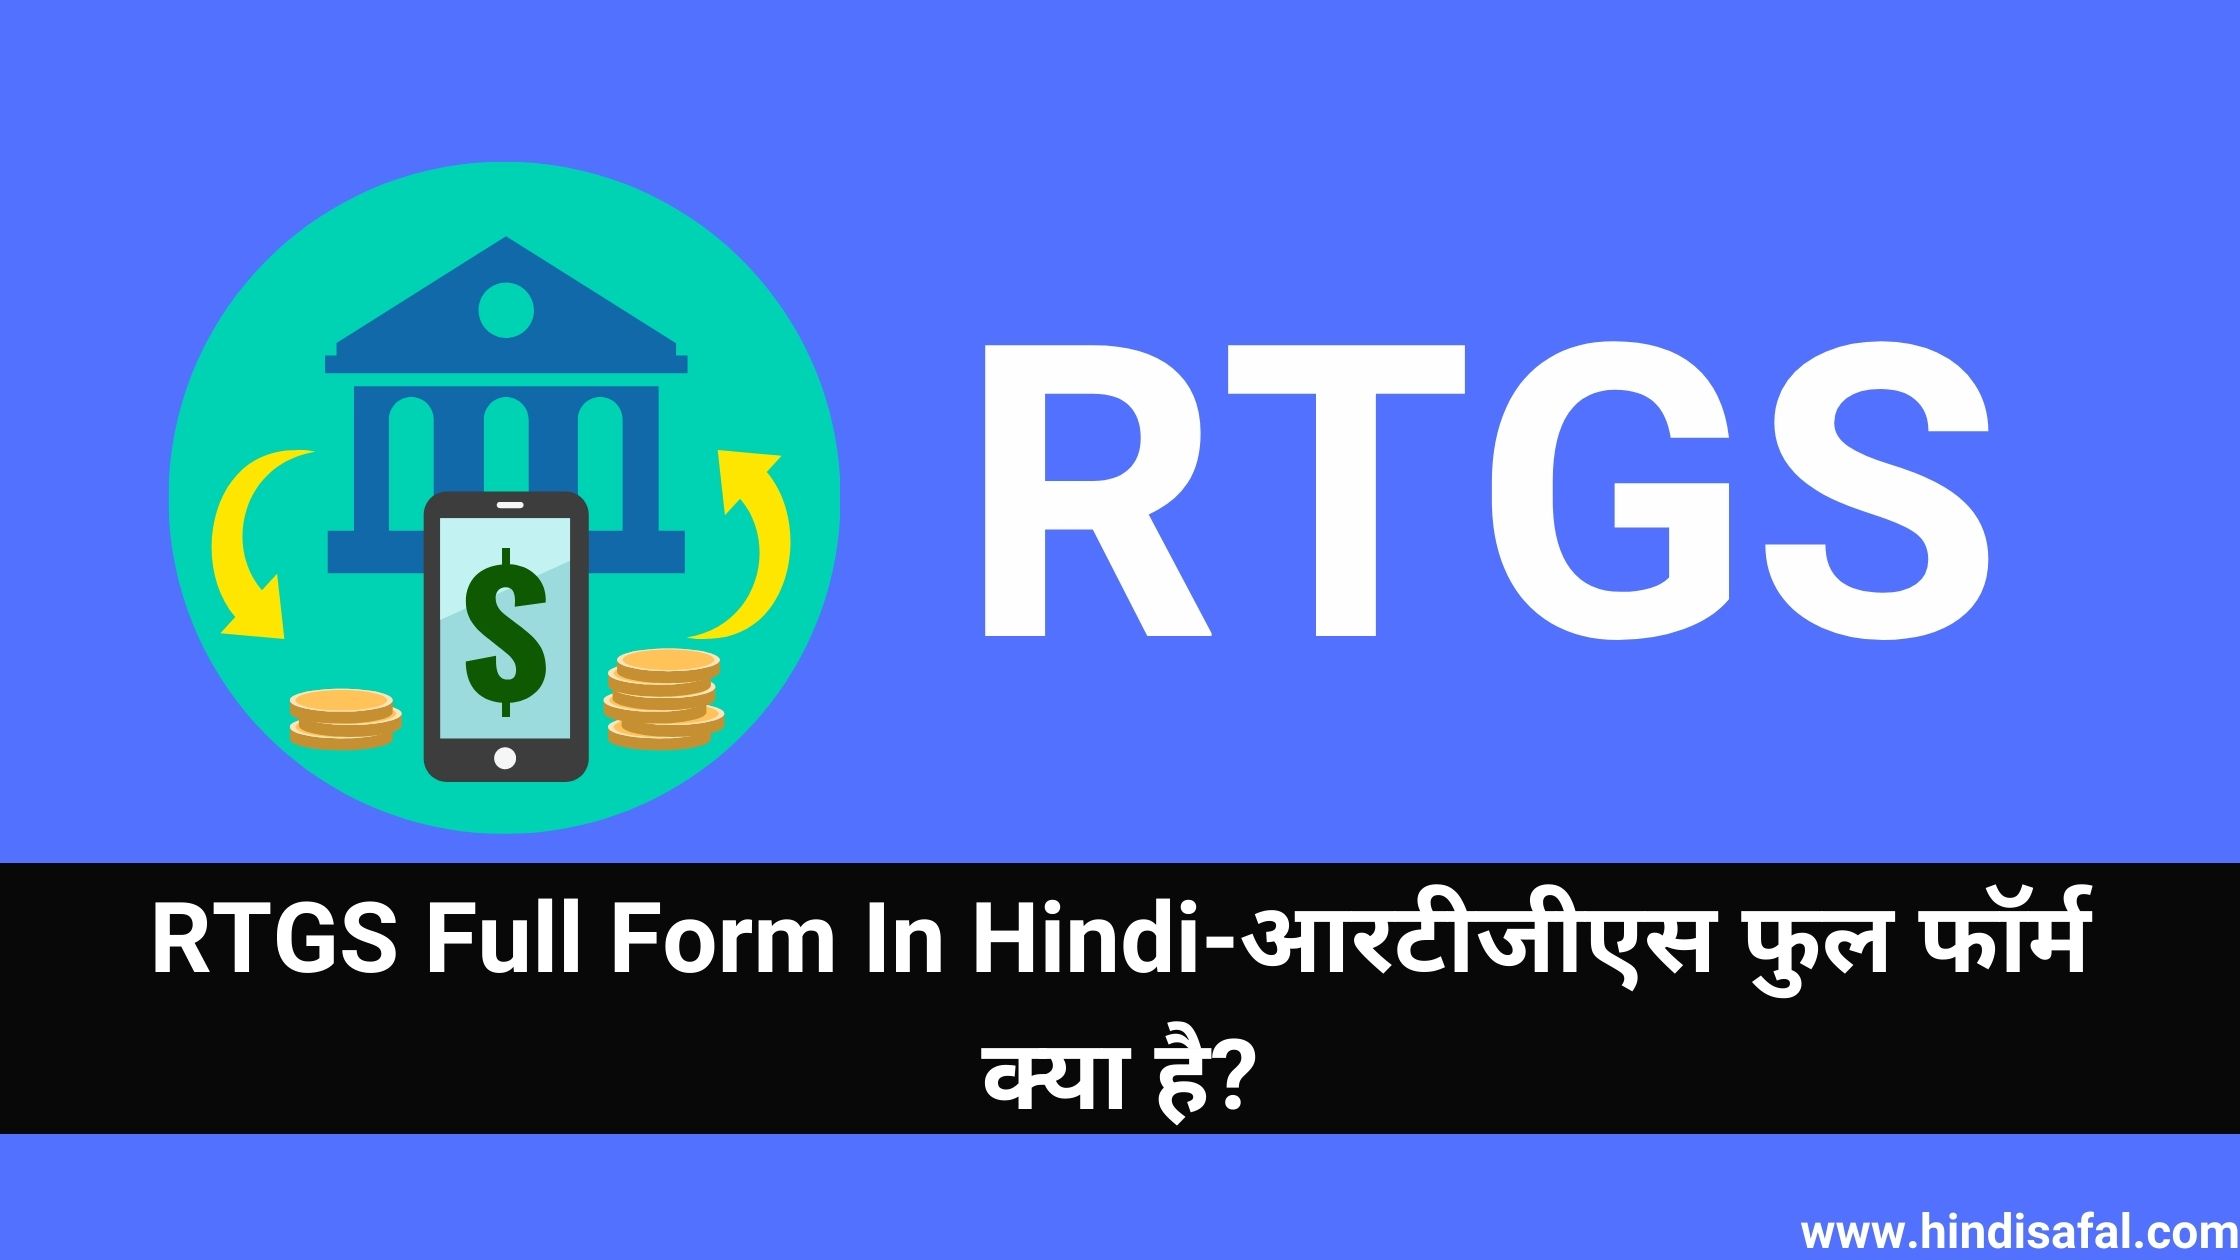 RTGS Full Form In Hindi-आरटीजीएस फुल फॉर्म क्या है?